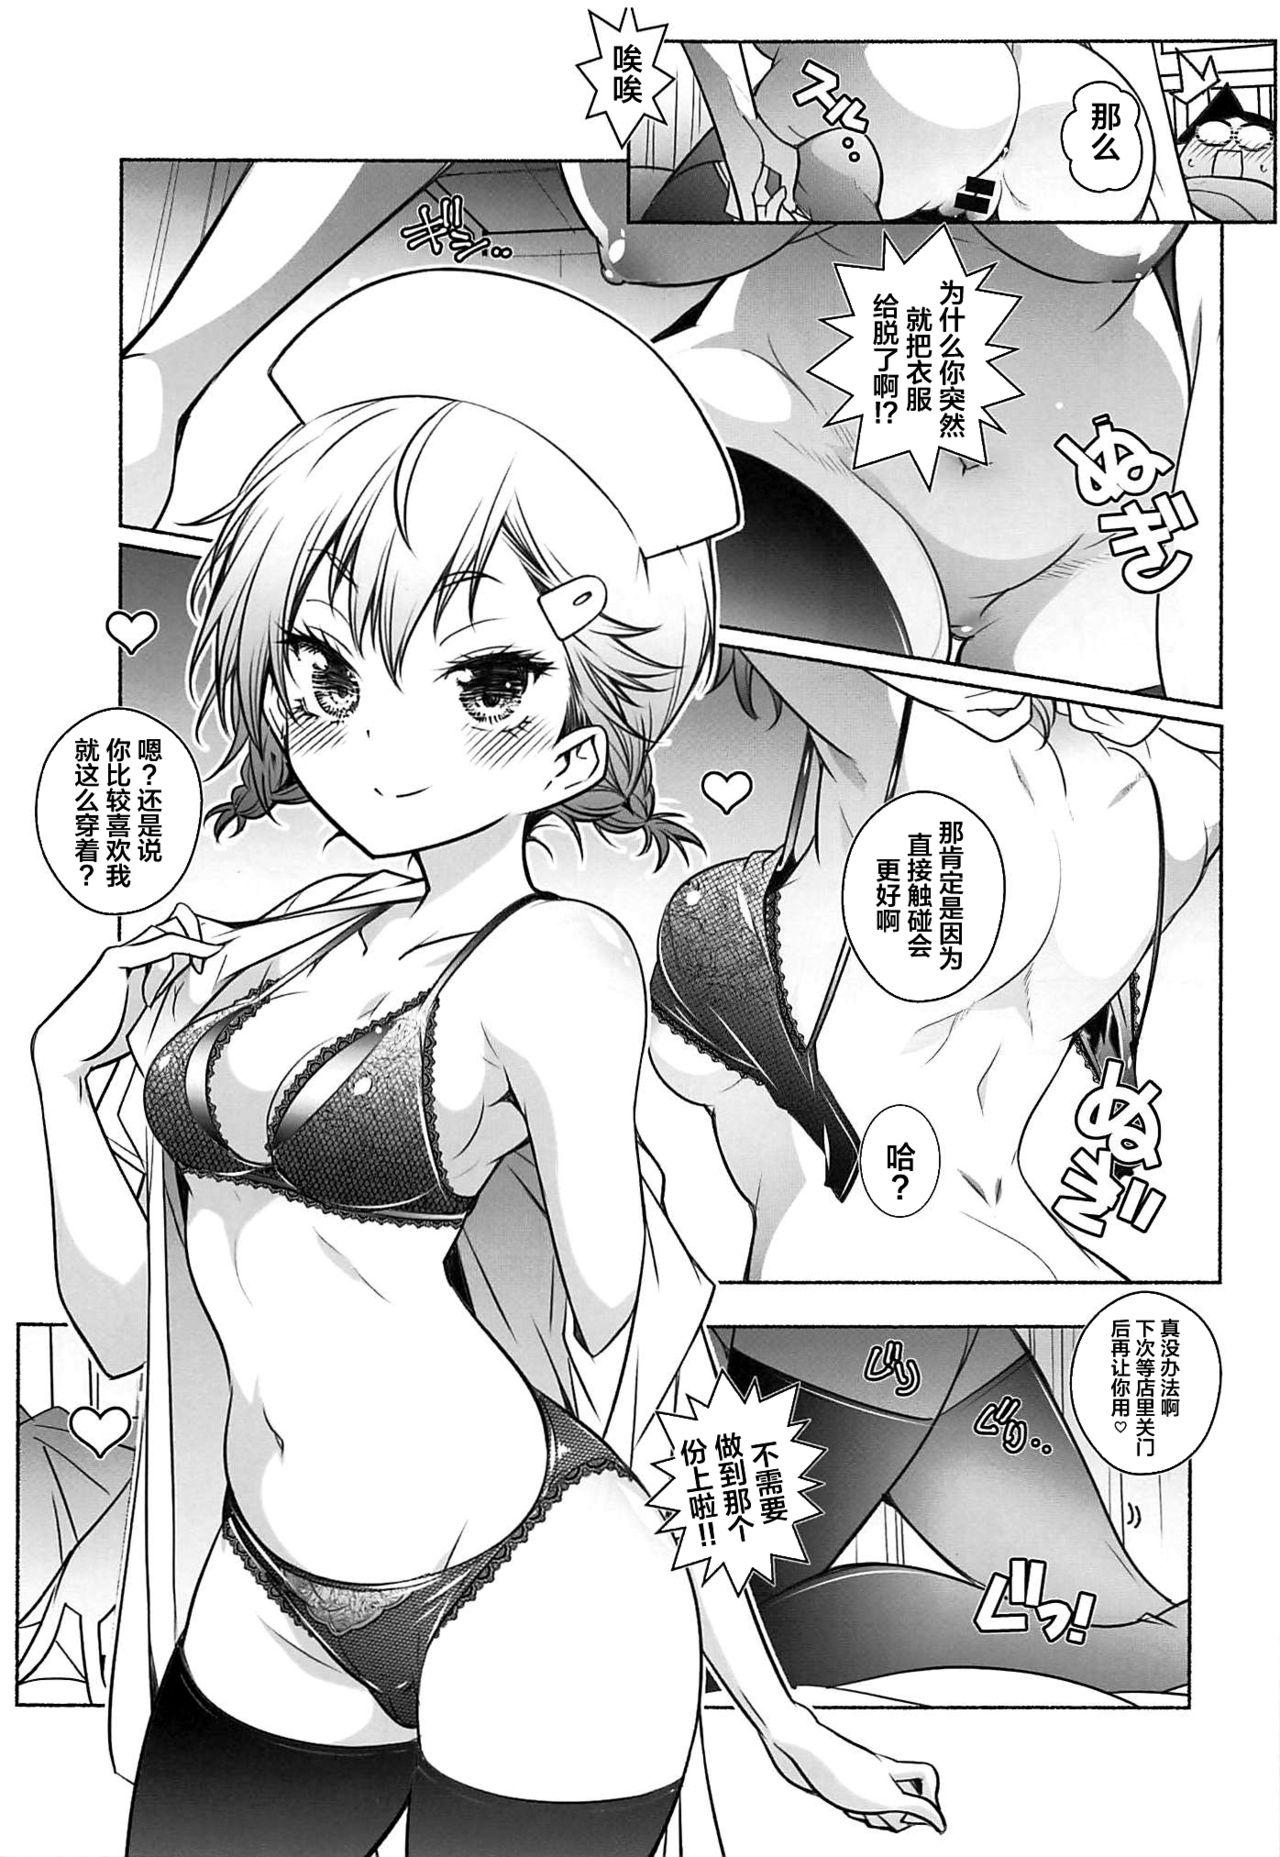 White Chick Mayu no Jidai w - Bokutachi wa benkyou ga dekinai Behind - Page 5